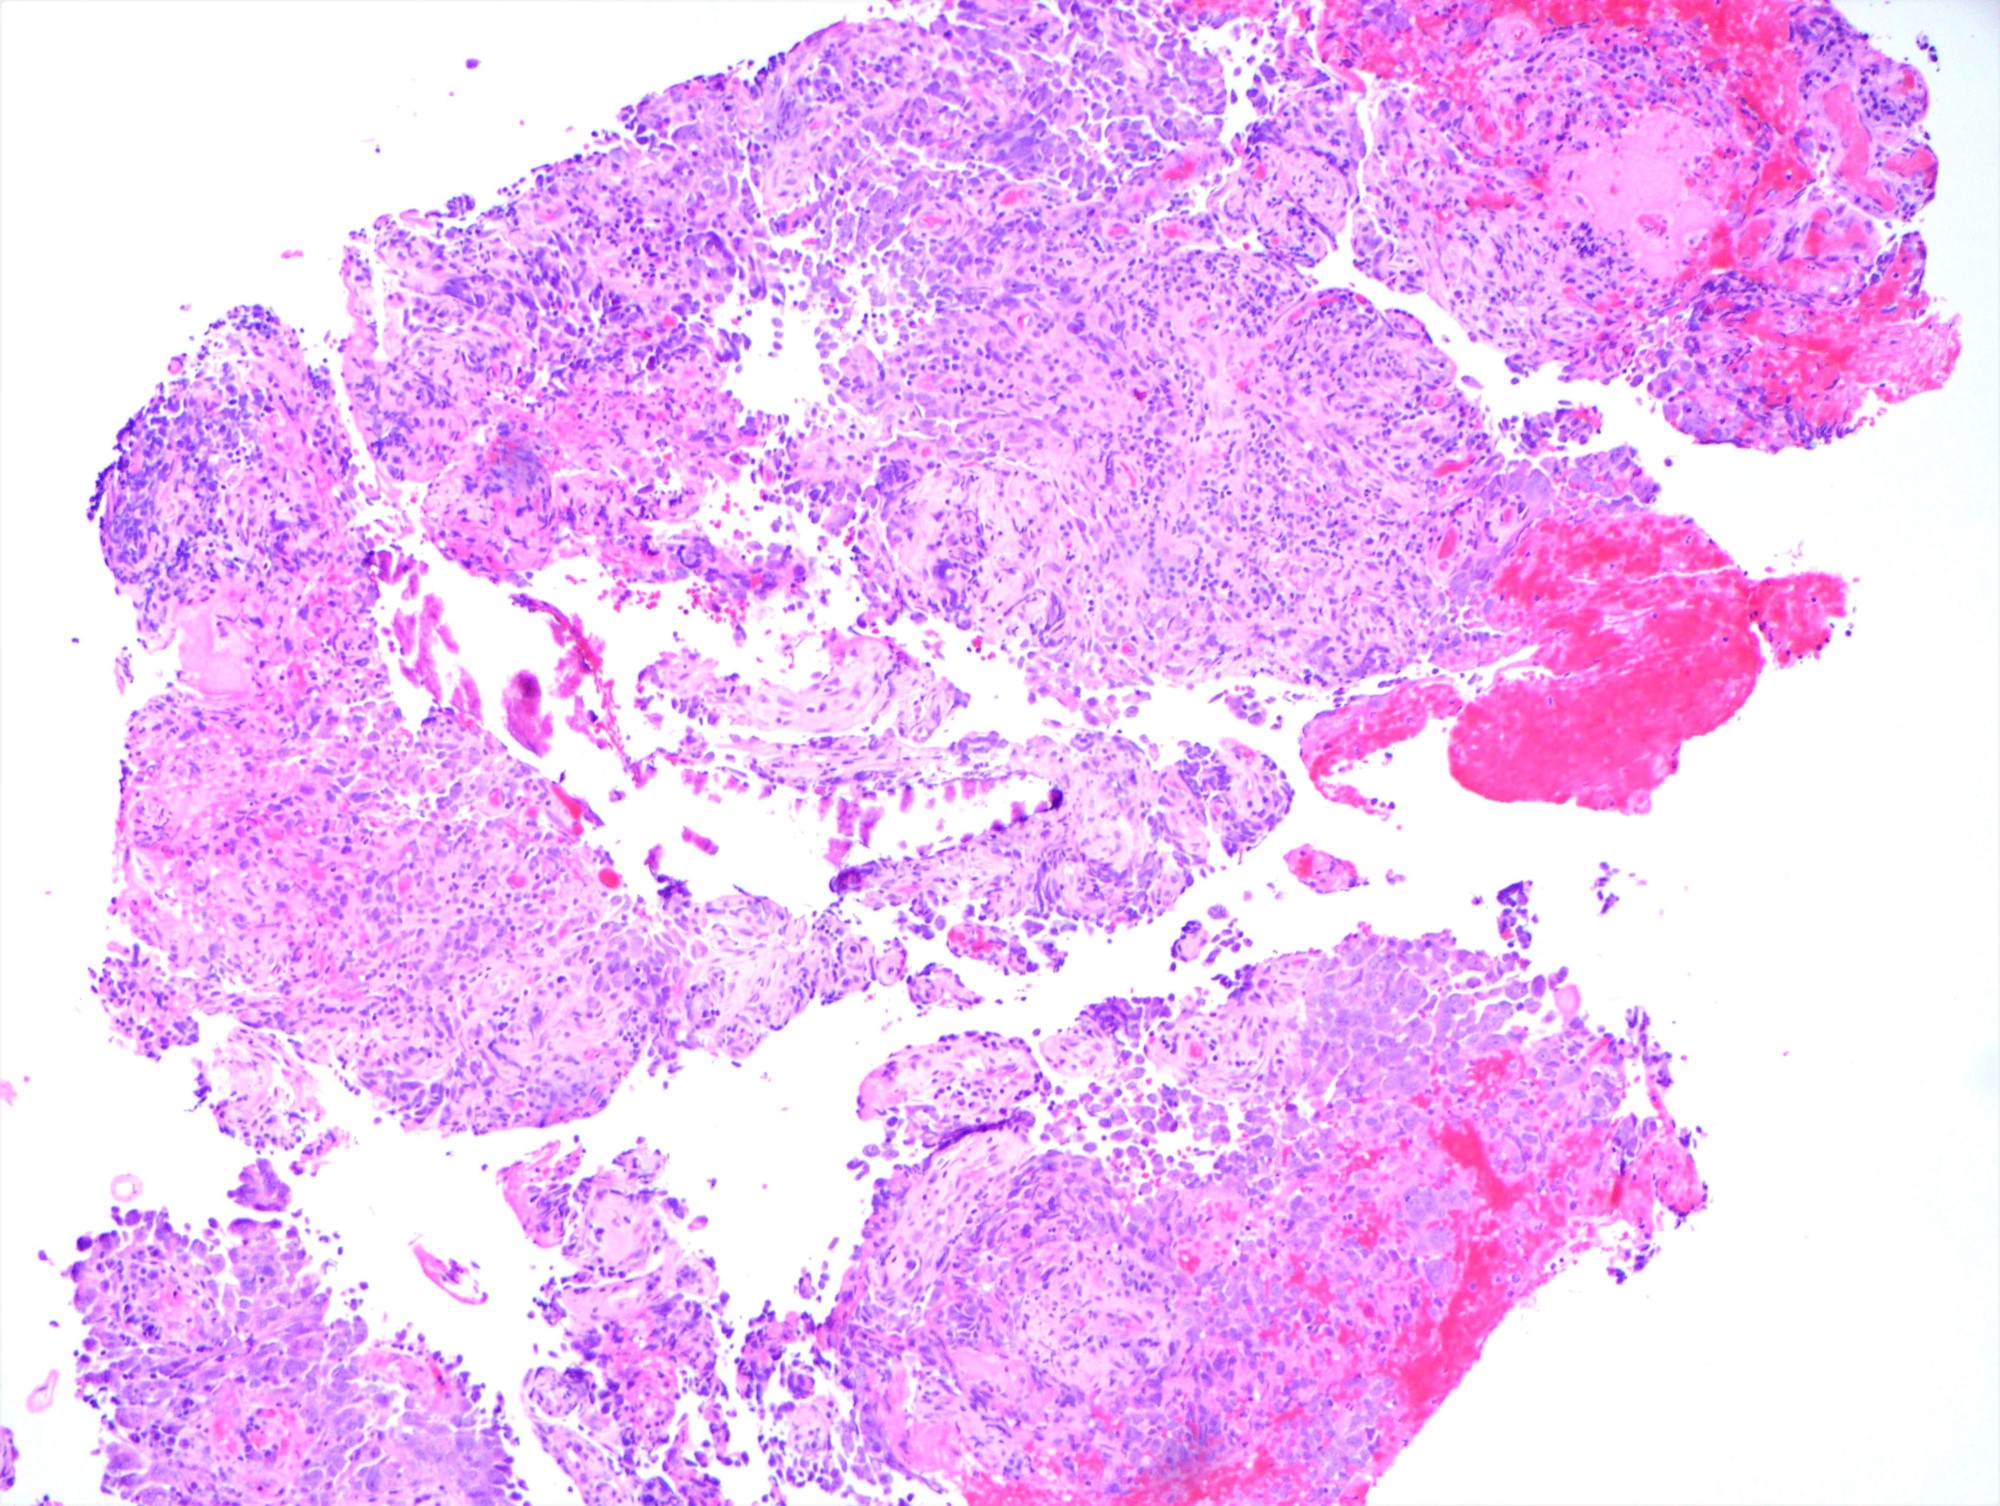 Metastatic ovarian serous carcinoma